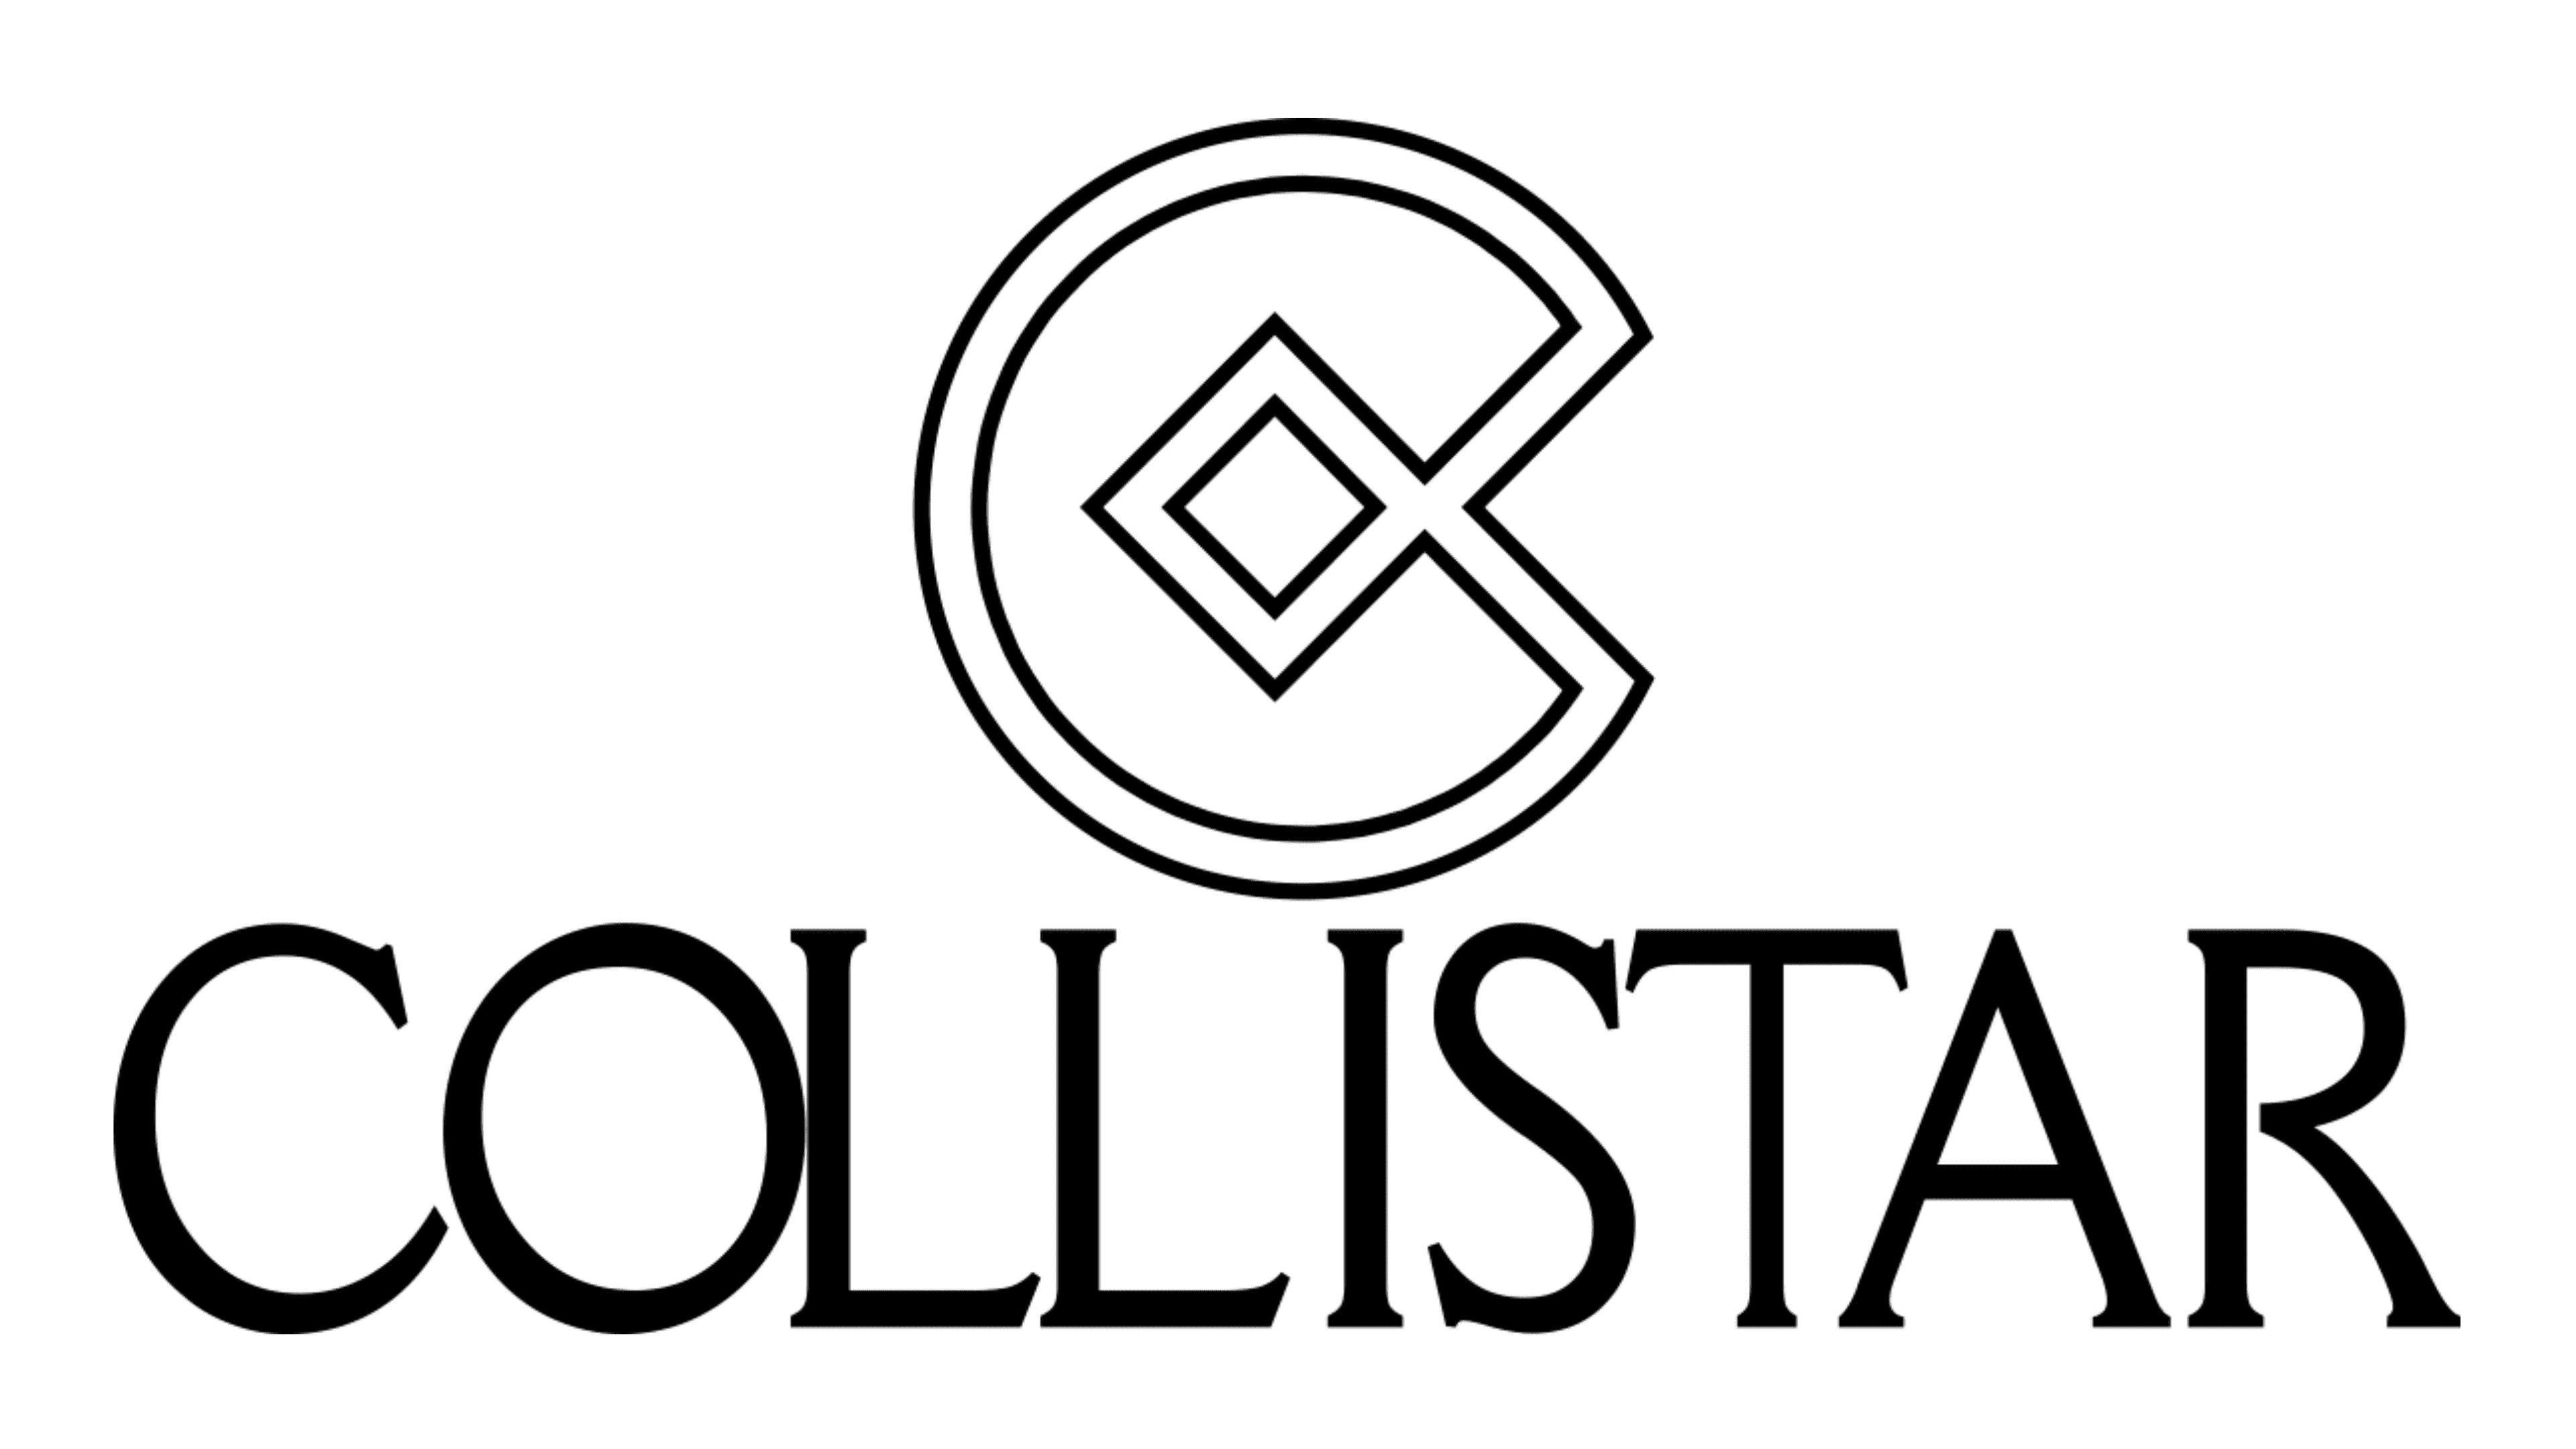 Collistar Logo Dan Simbol Makna Sejarah Png Merek Sexiz Pix Images